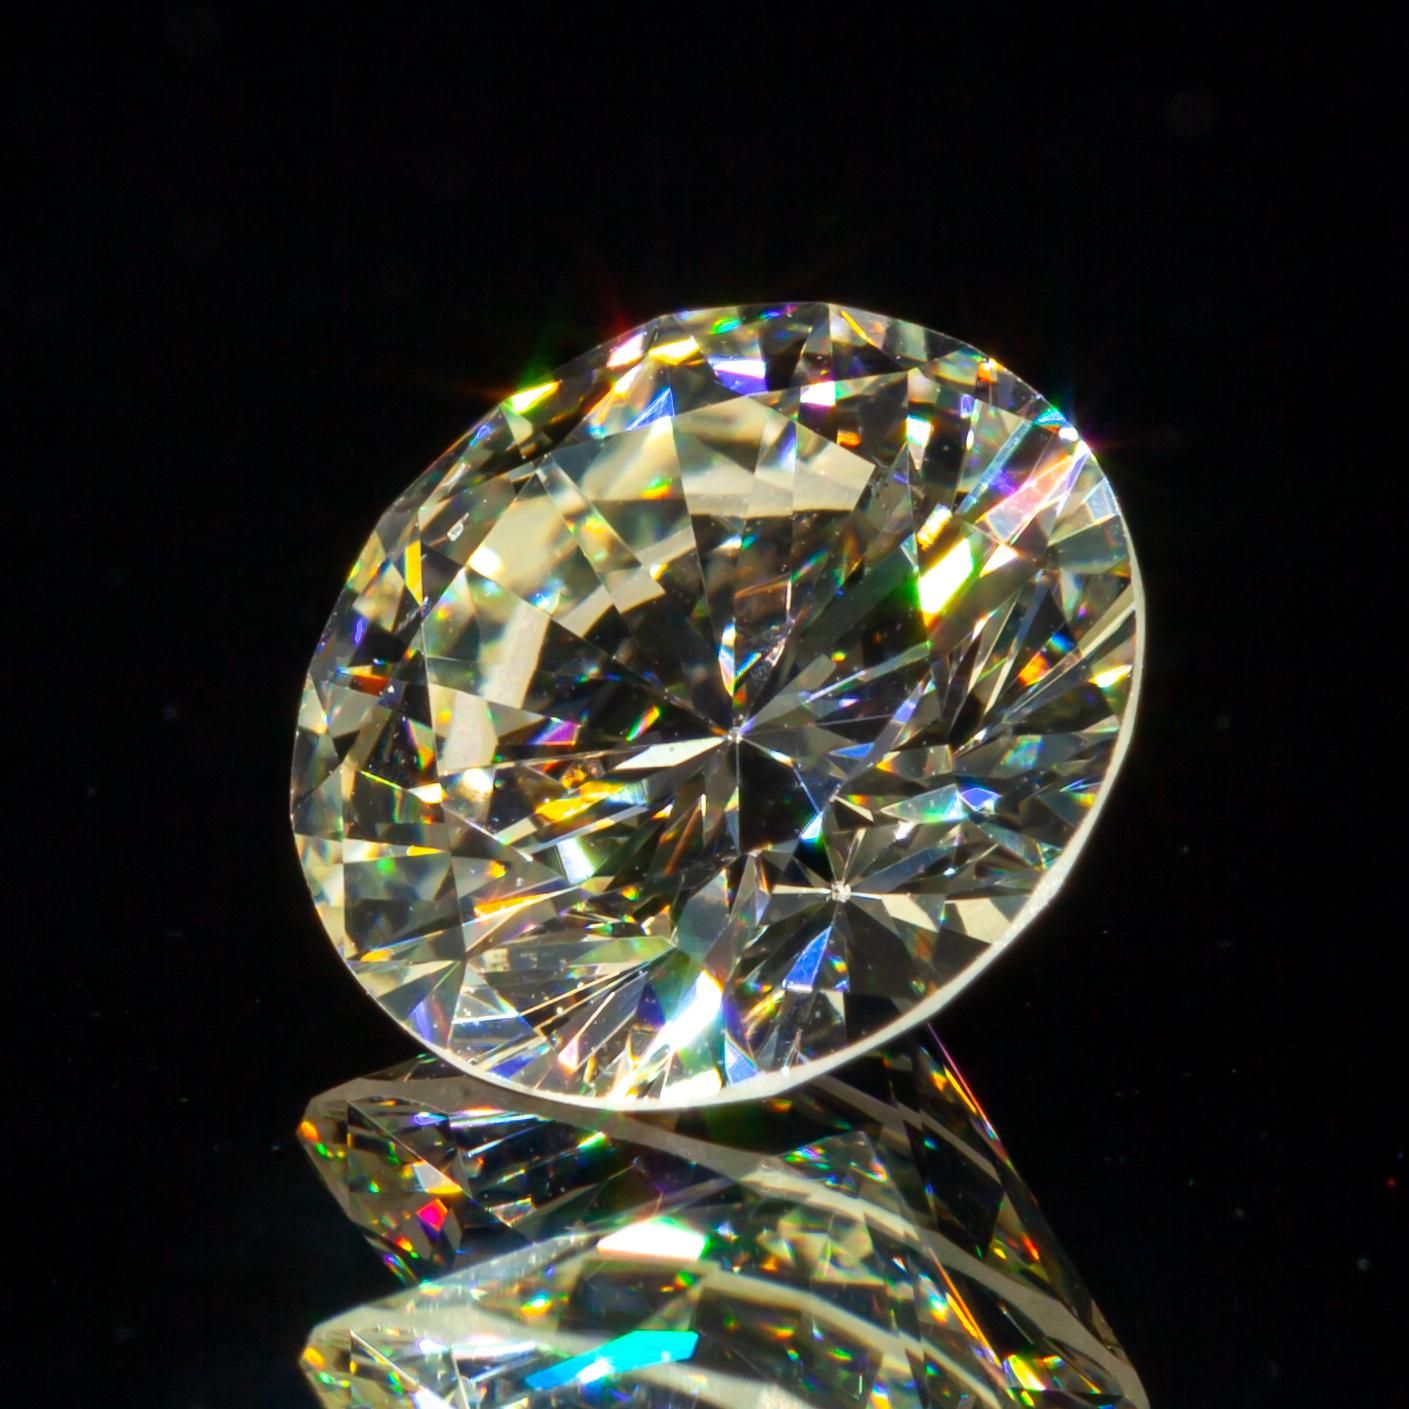 1.53 Carat Loose M/ VS2 Round Brilliant Cut Diamond GIA Certified (en anglais)

Informations générales sur le diamant
Taille du diamant : Brilliante ronde
Dimensions : 7.57  x  7.54  -  4.42 mm

Résultats de la classification des diamants
Poids en